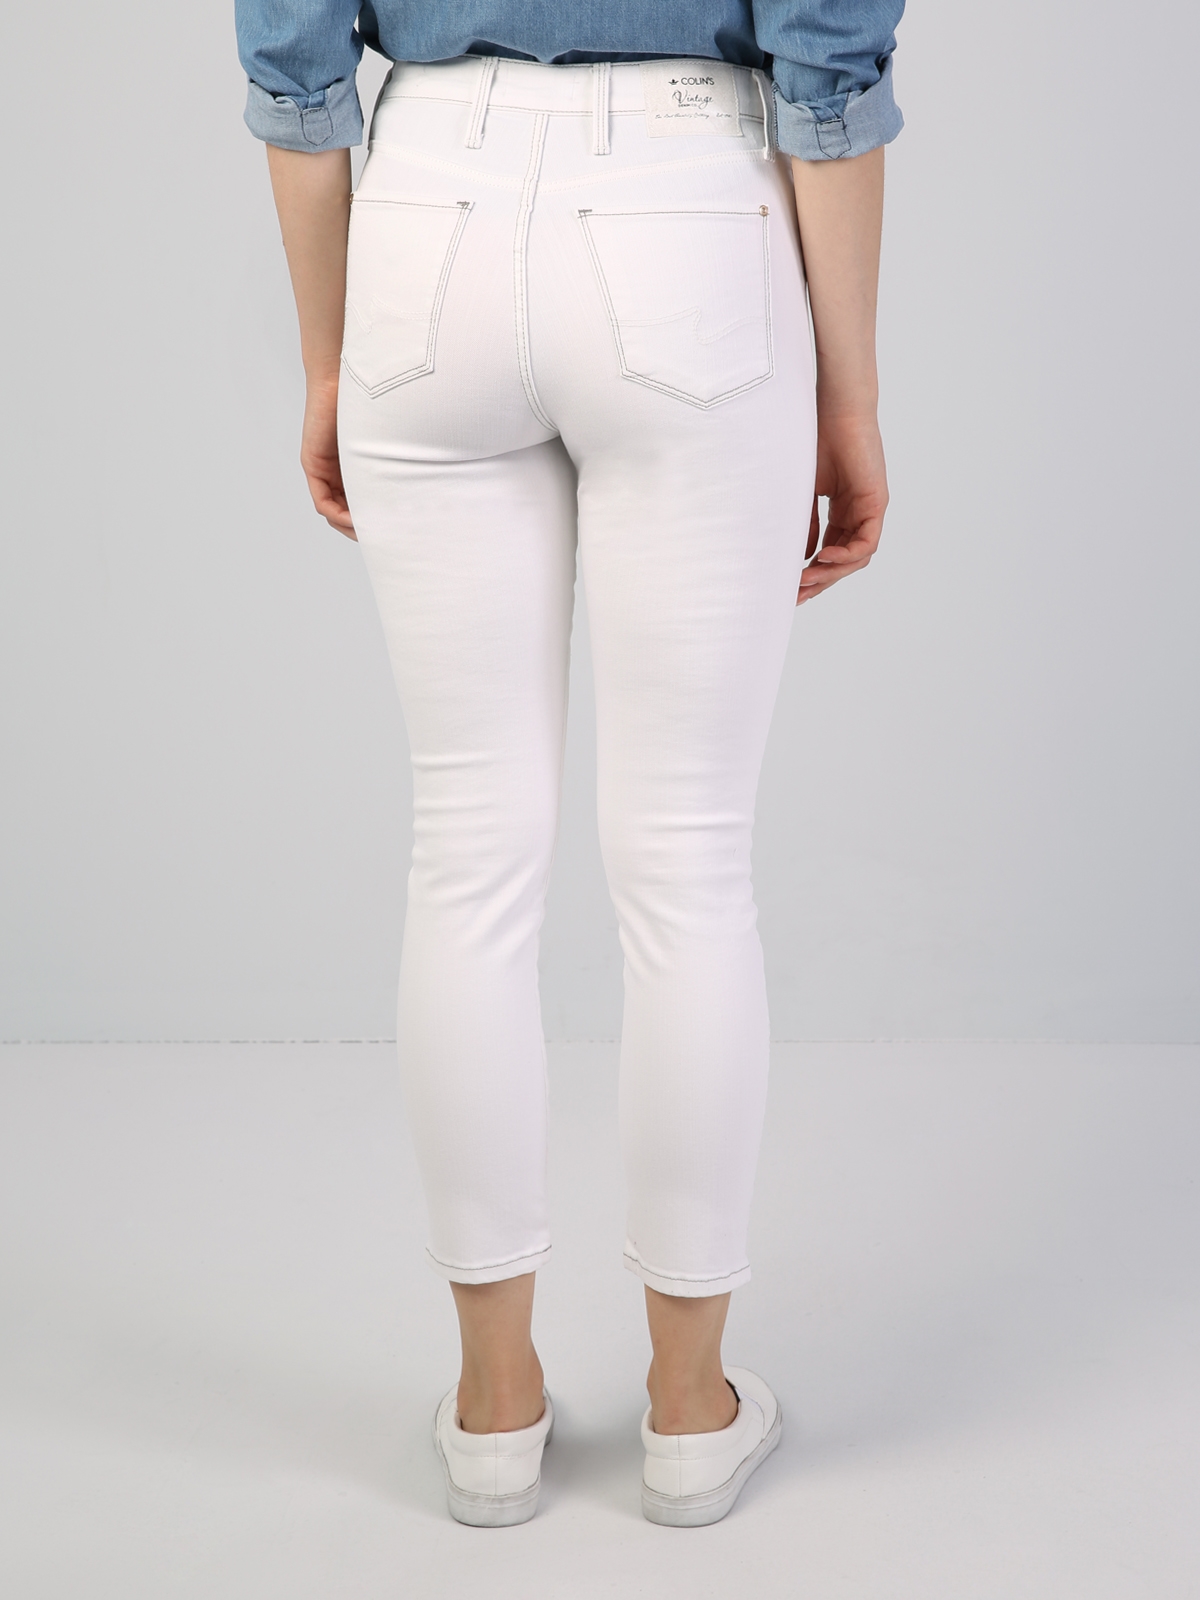 Afișați detalii pentru Pantaloni De Dama Alb Super Slim Fit 760 DIANA